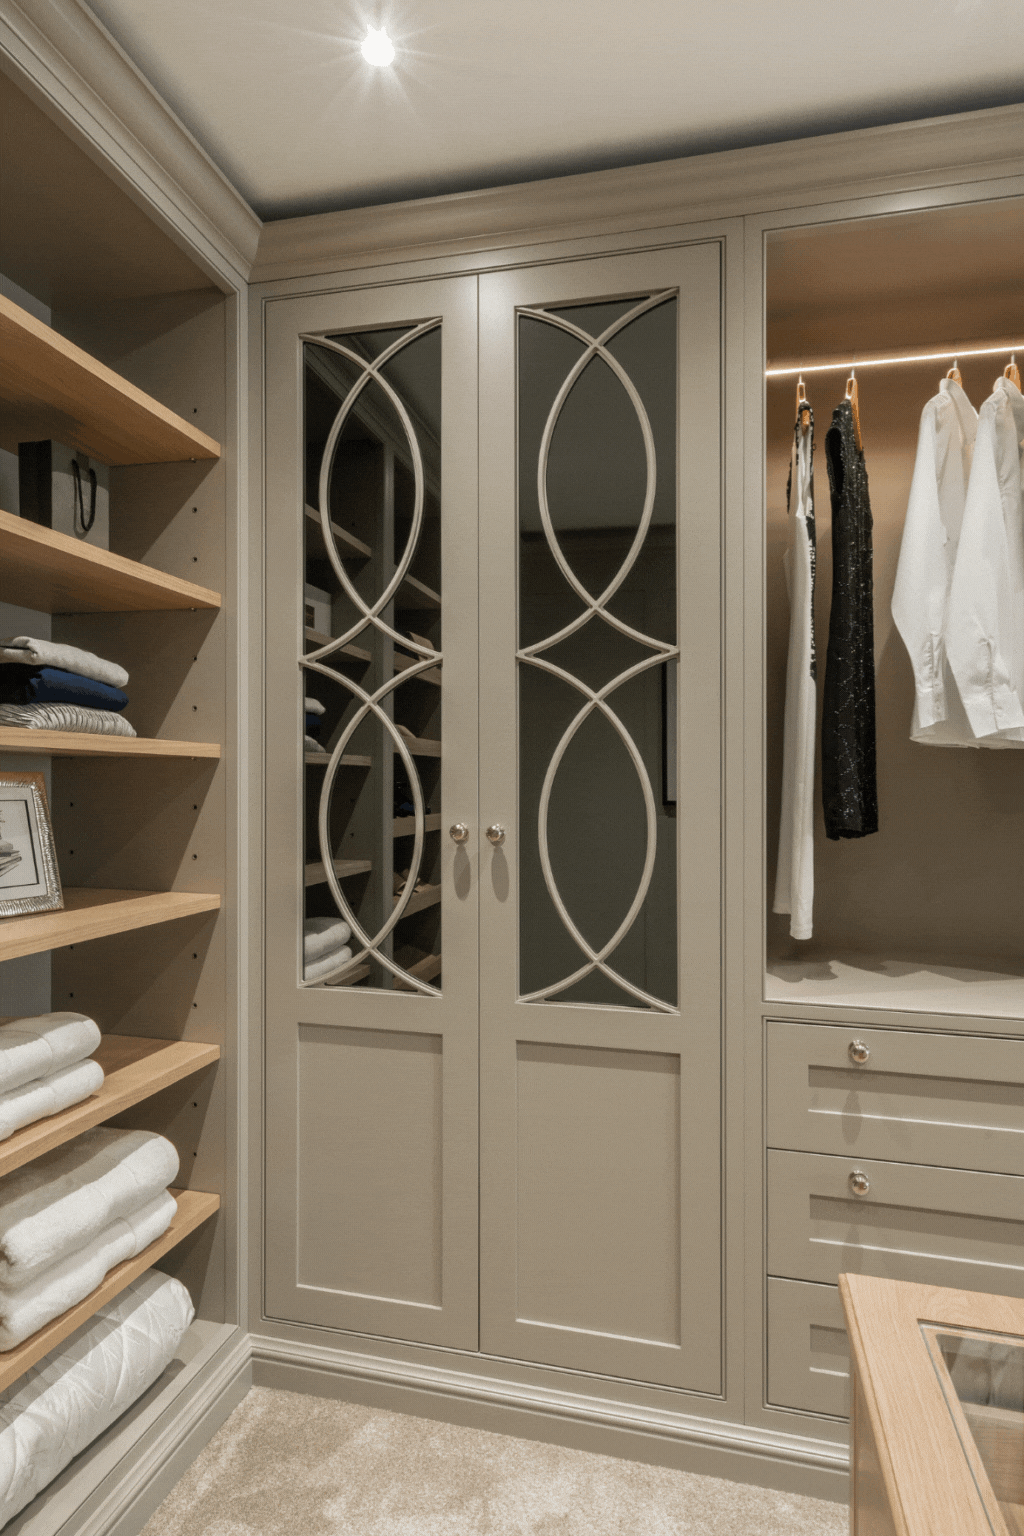 White Minimalist Simple Interior Design Consult Instagram Post (1707 × 2560 px)